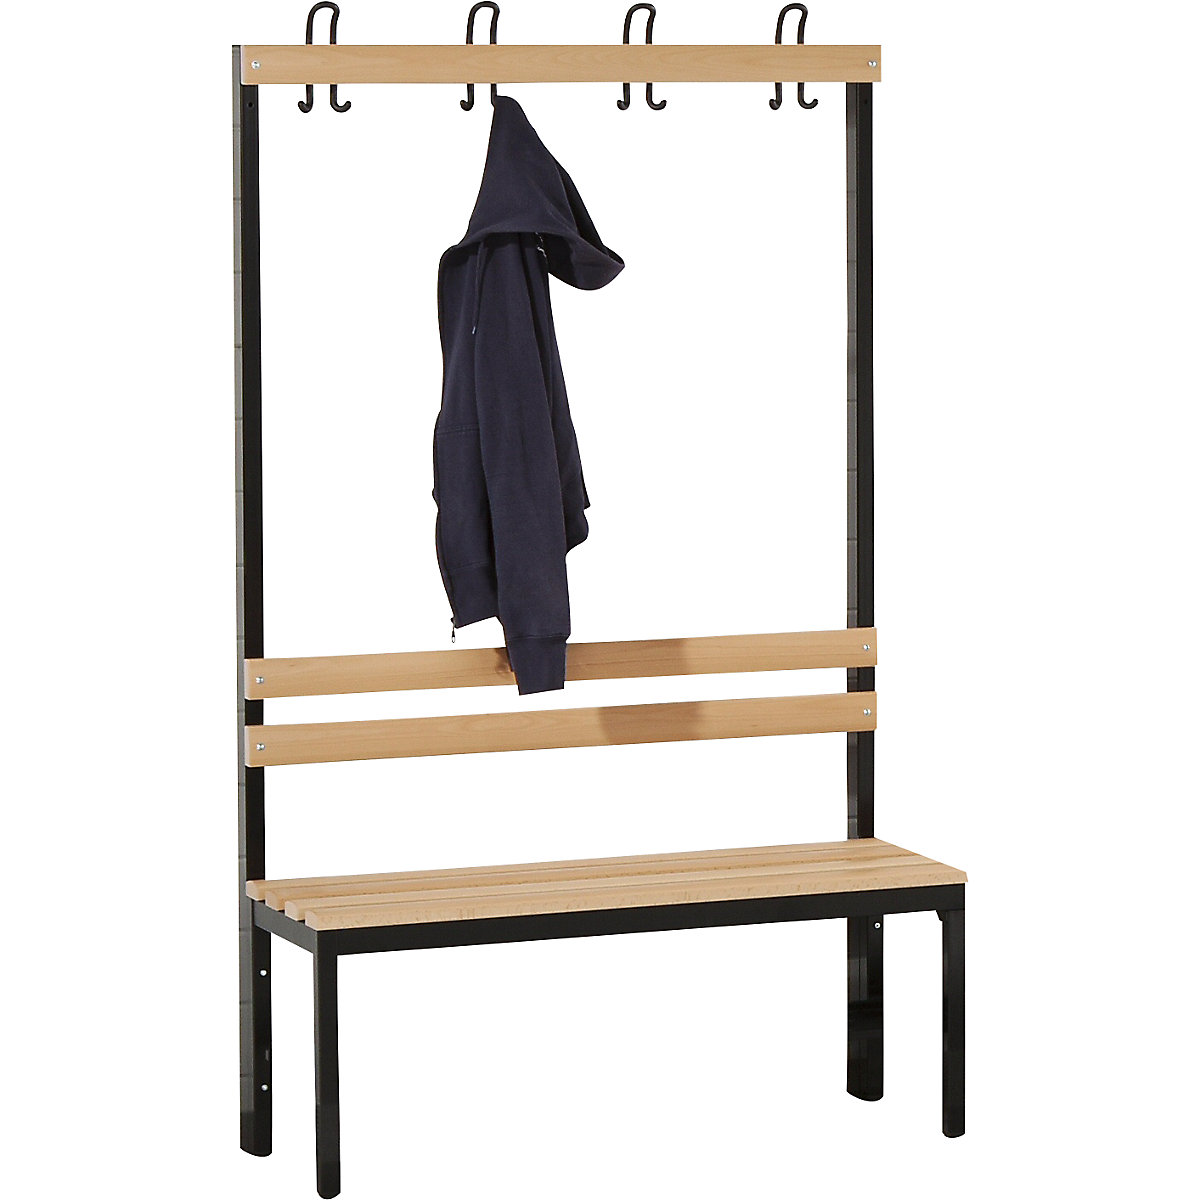 Wolf – Cloakroom bench, single sided, beechwood slat, 1000 mm, 4 double hooks